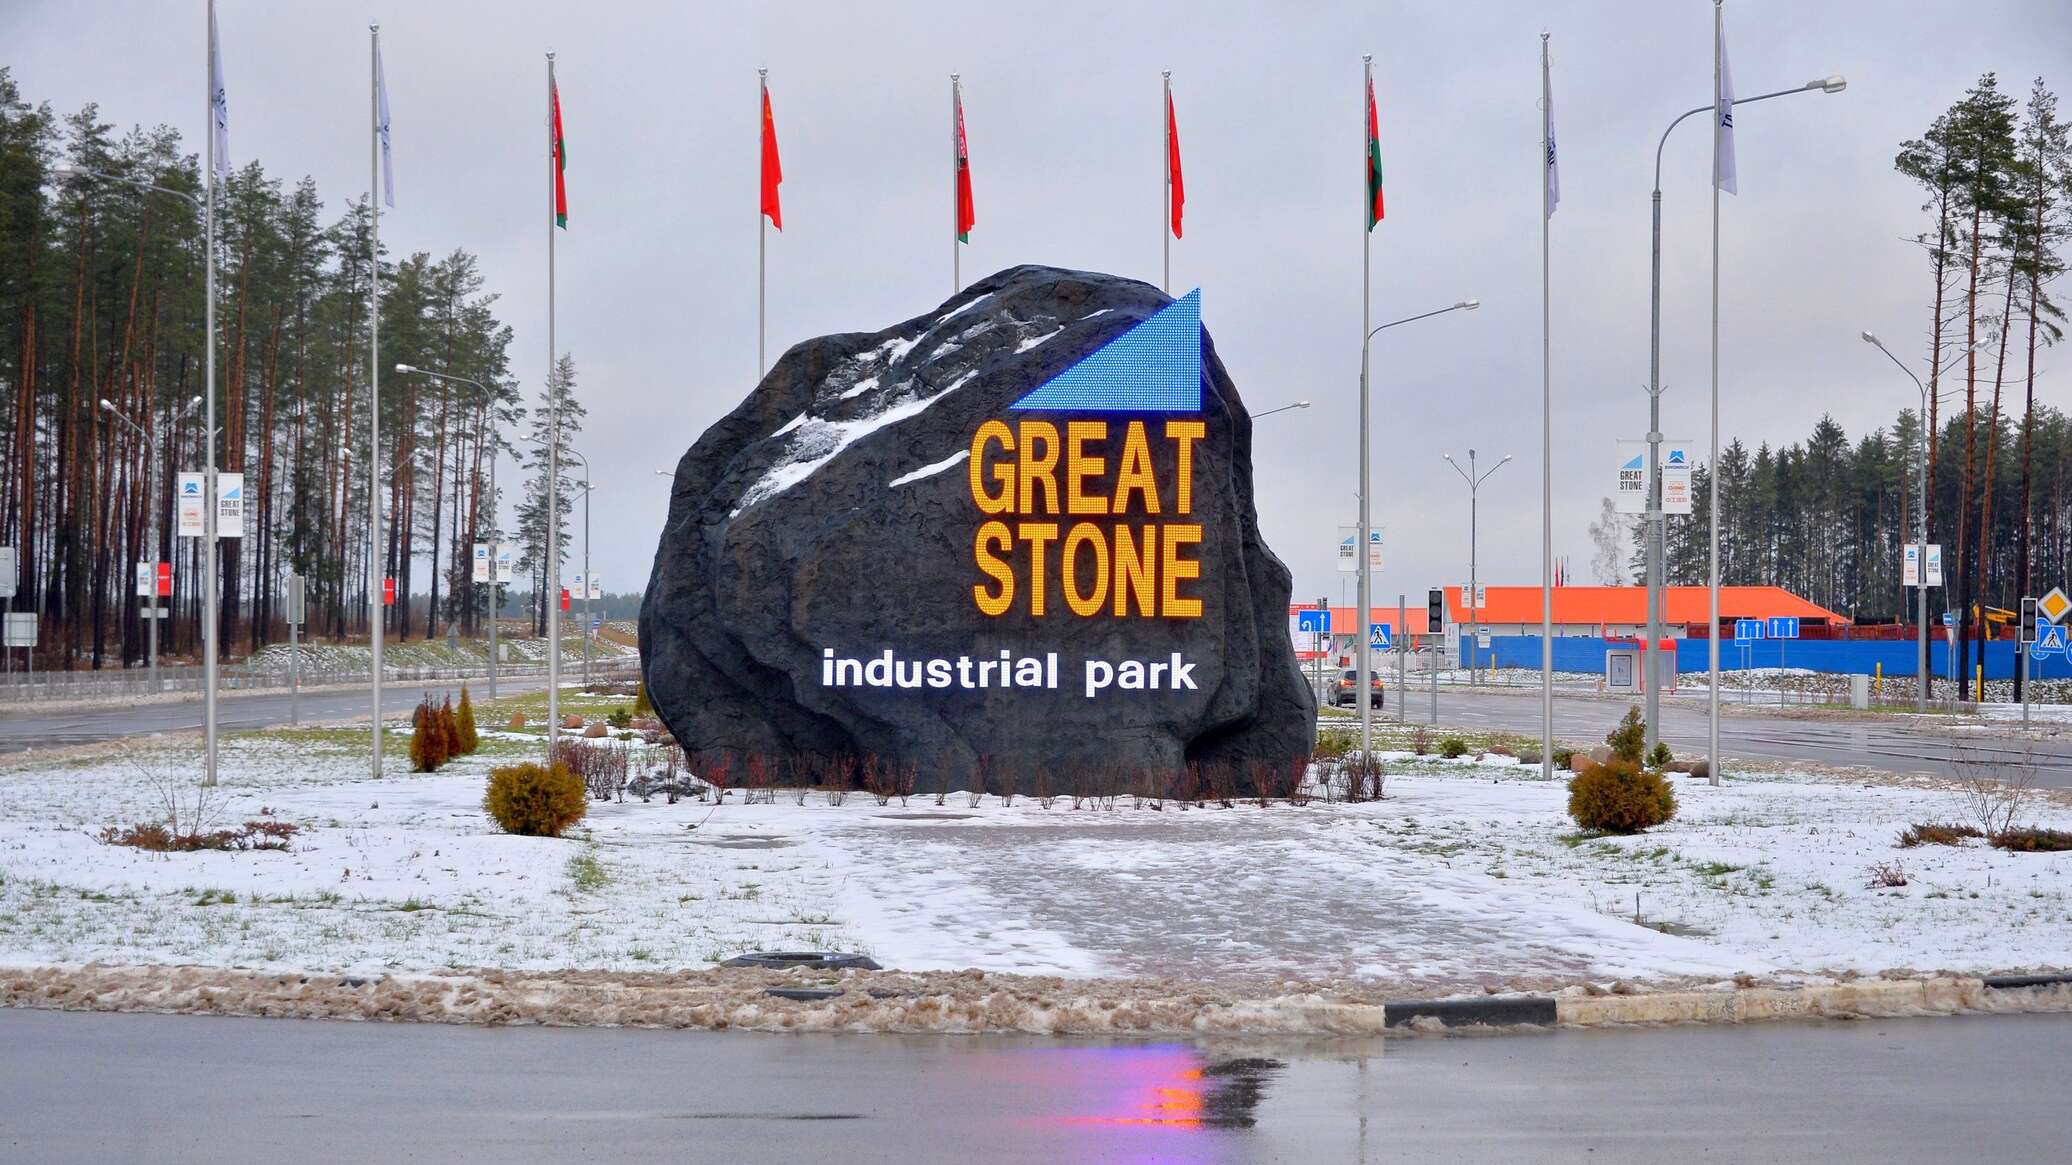 Китайско-белорусский Индустриальный парк Великий камень